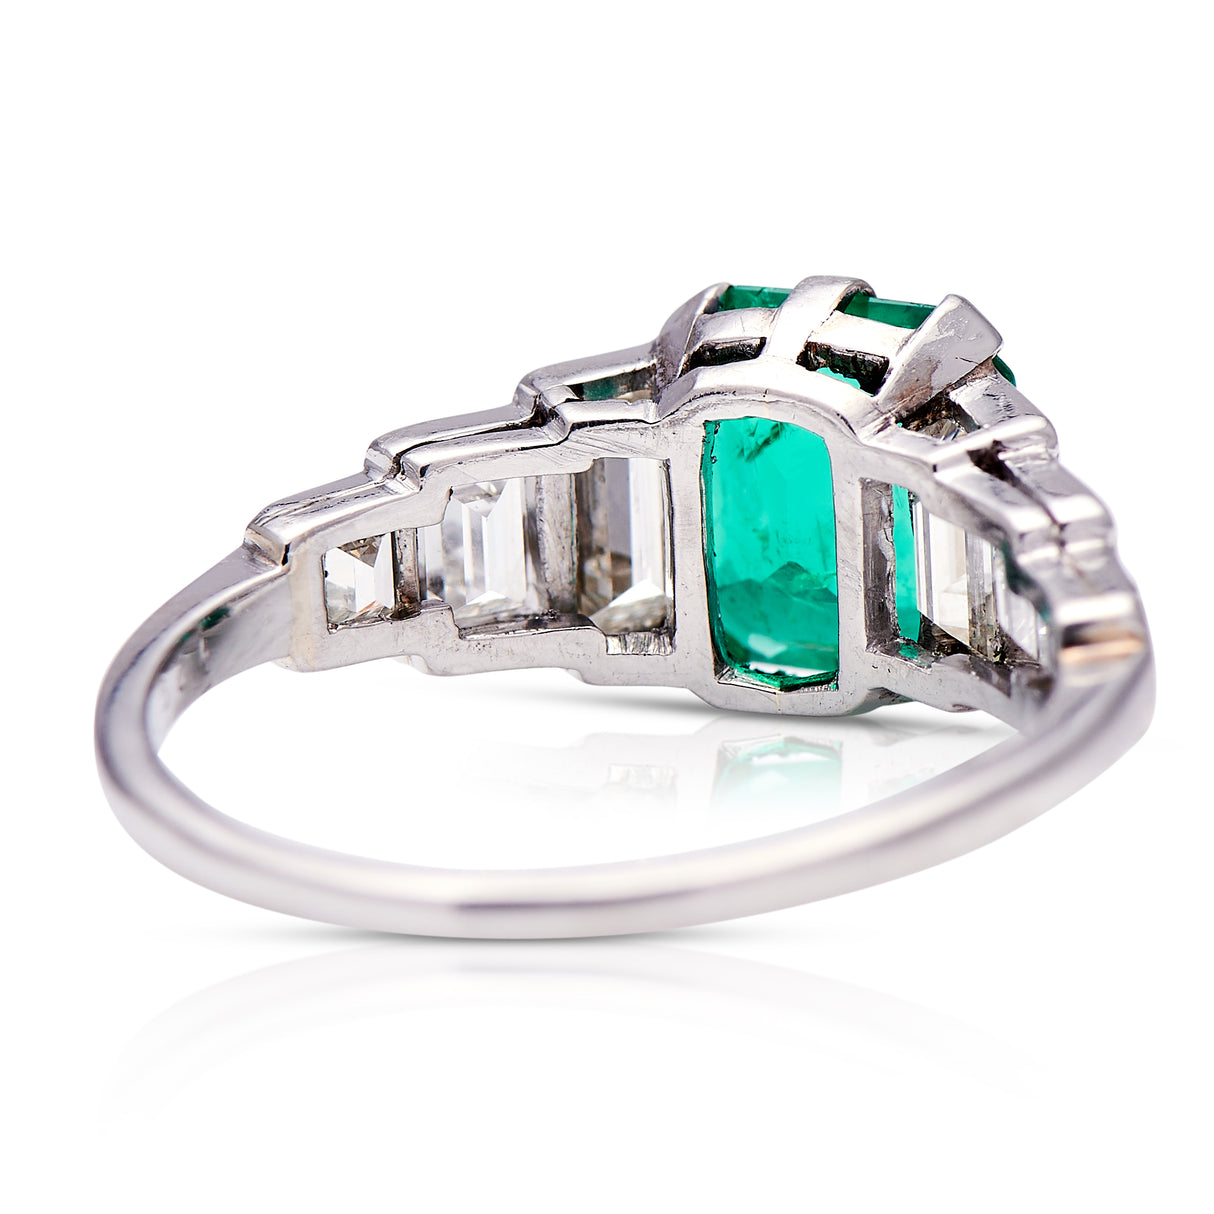 Art Deco, platinum, emerald & diamond ring, platinum